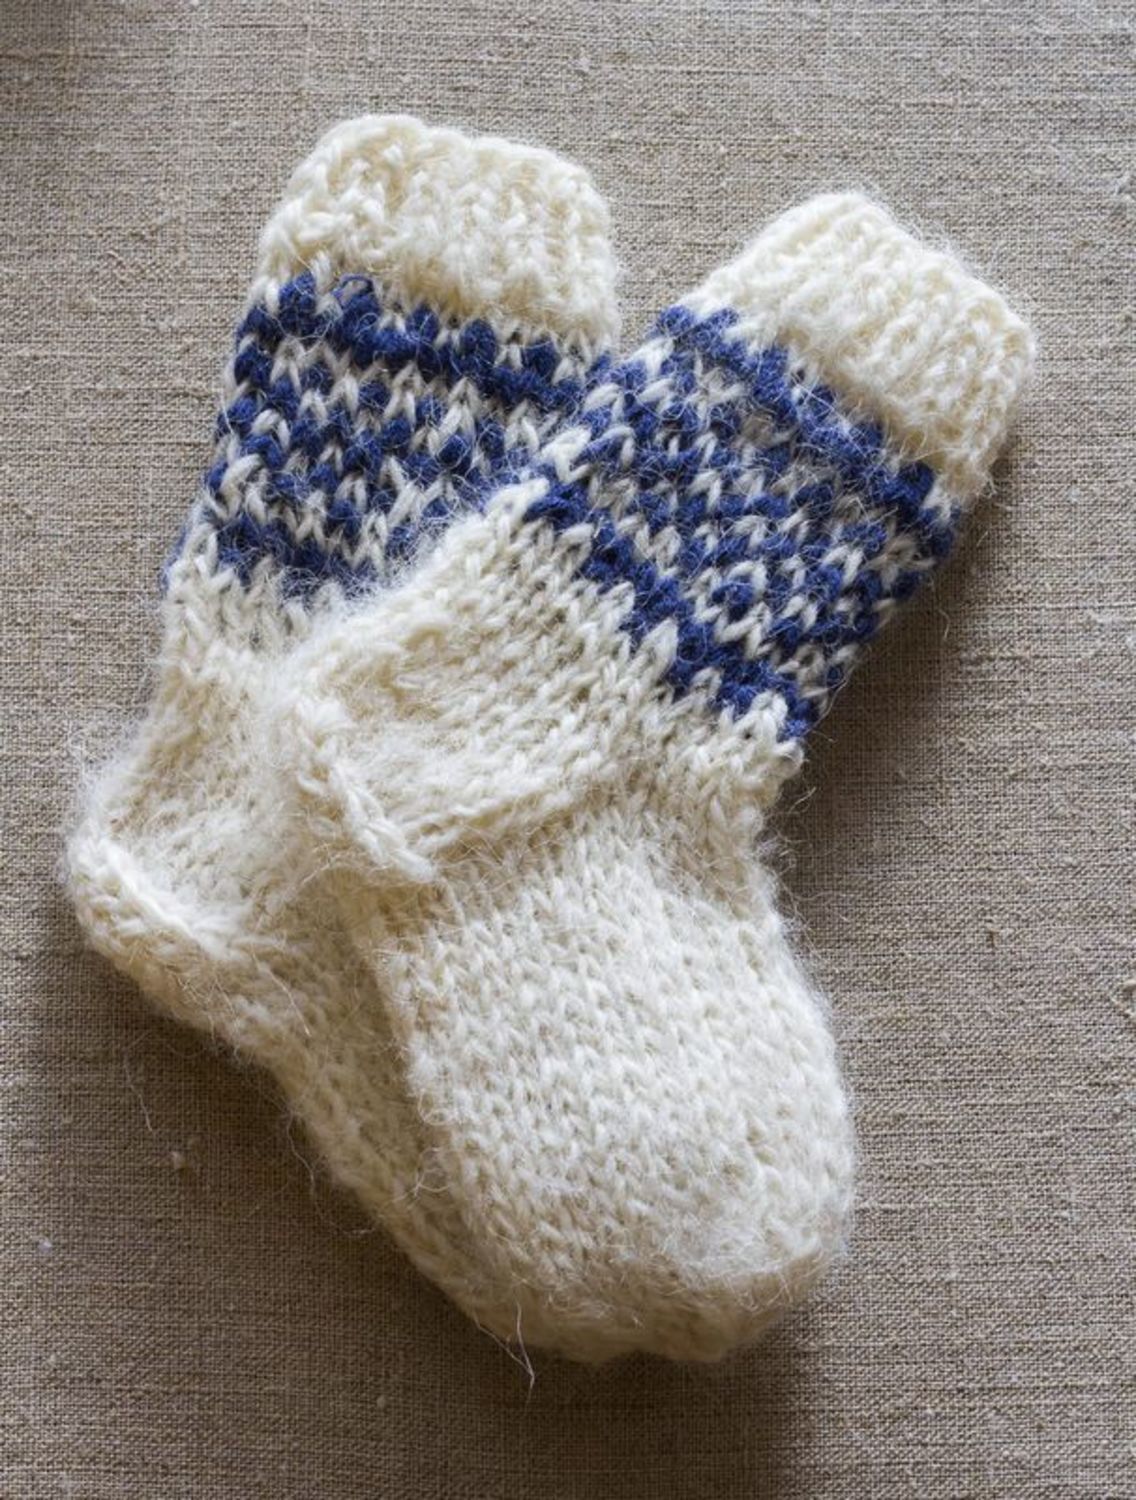 Children's socks made of wool photo 1